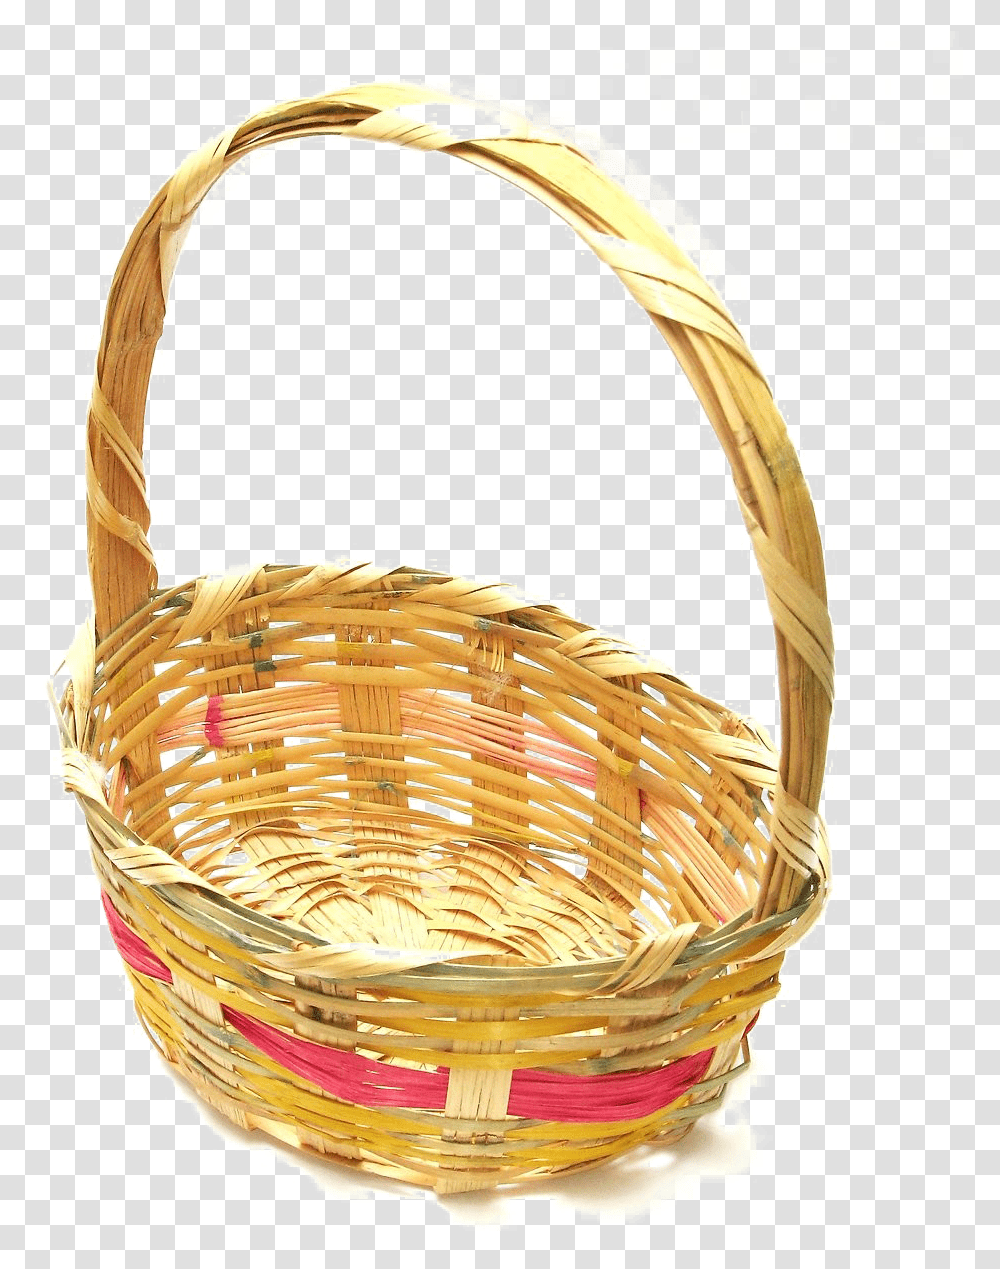 Easter Basket Free Image Empty Easter Basket, Shopping Basket Transparent Png